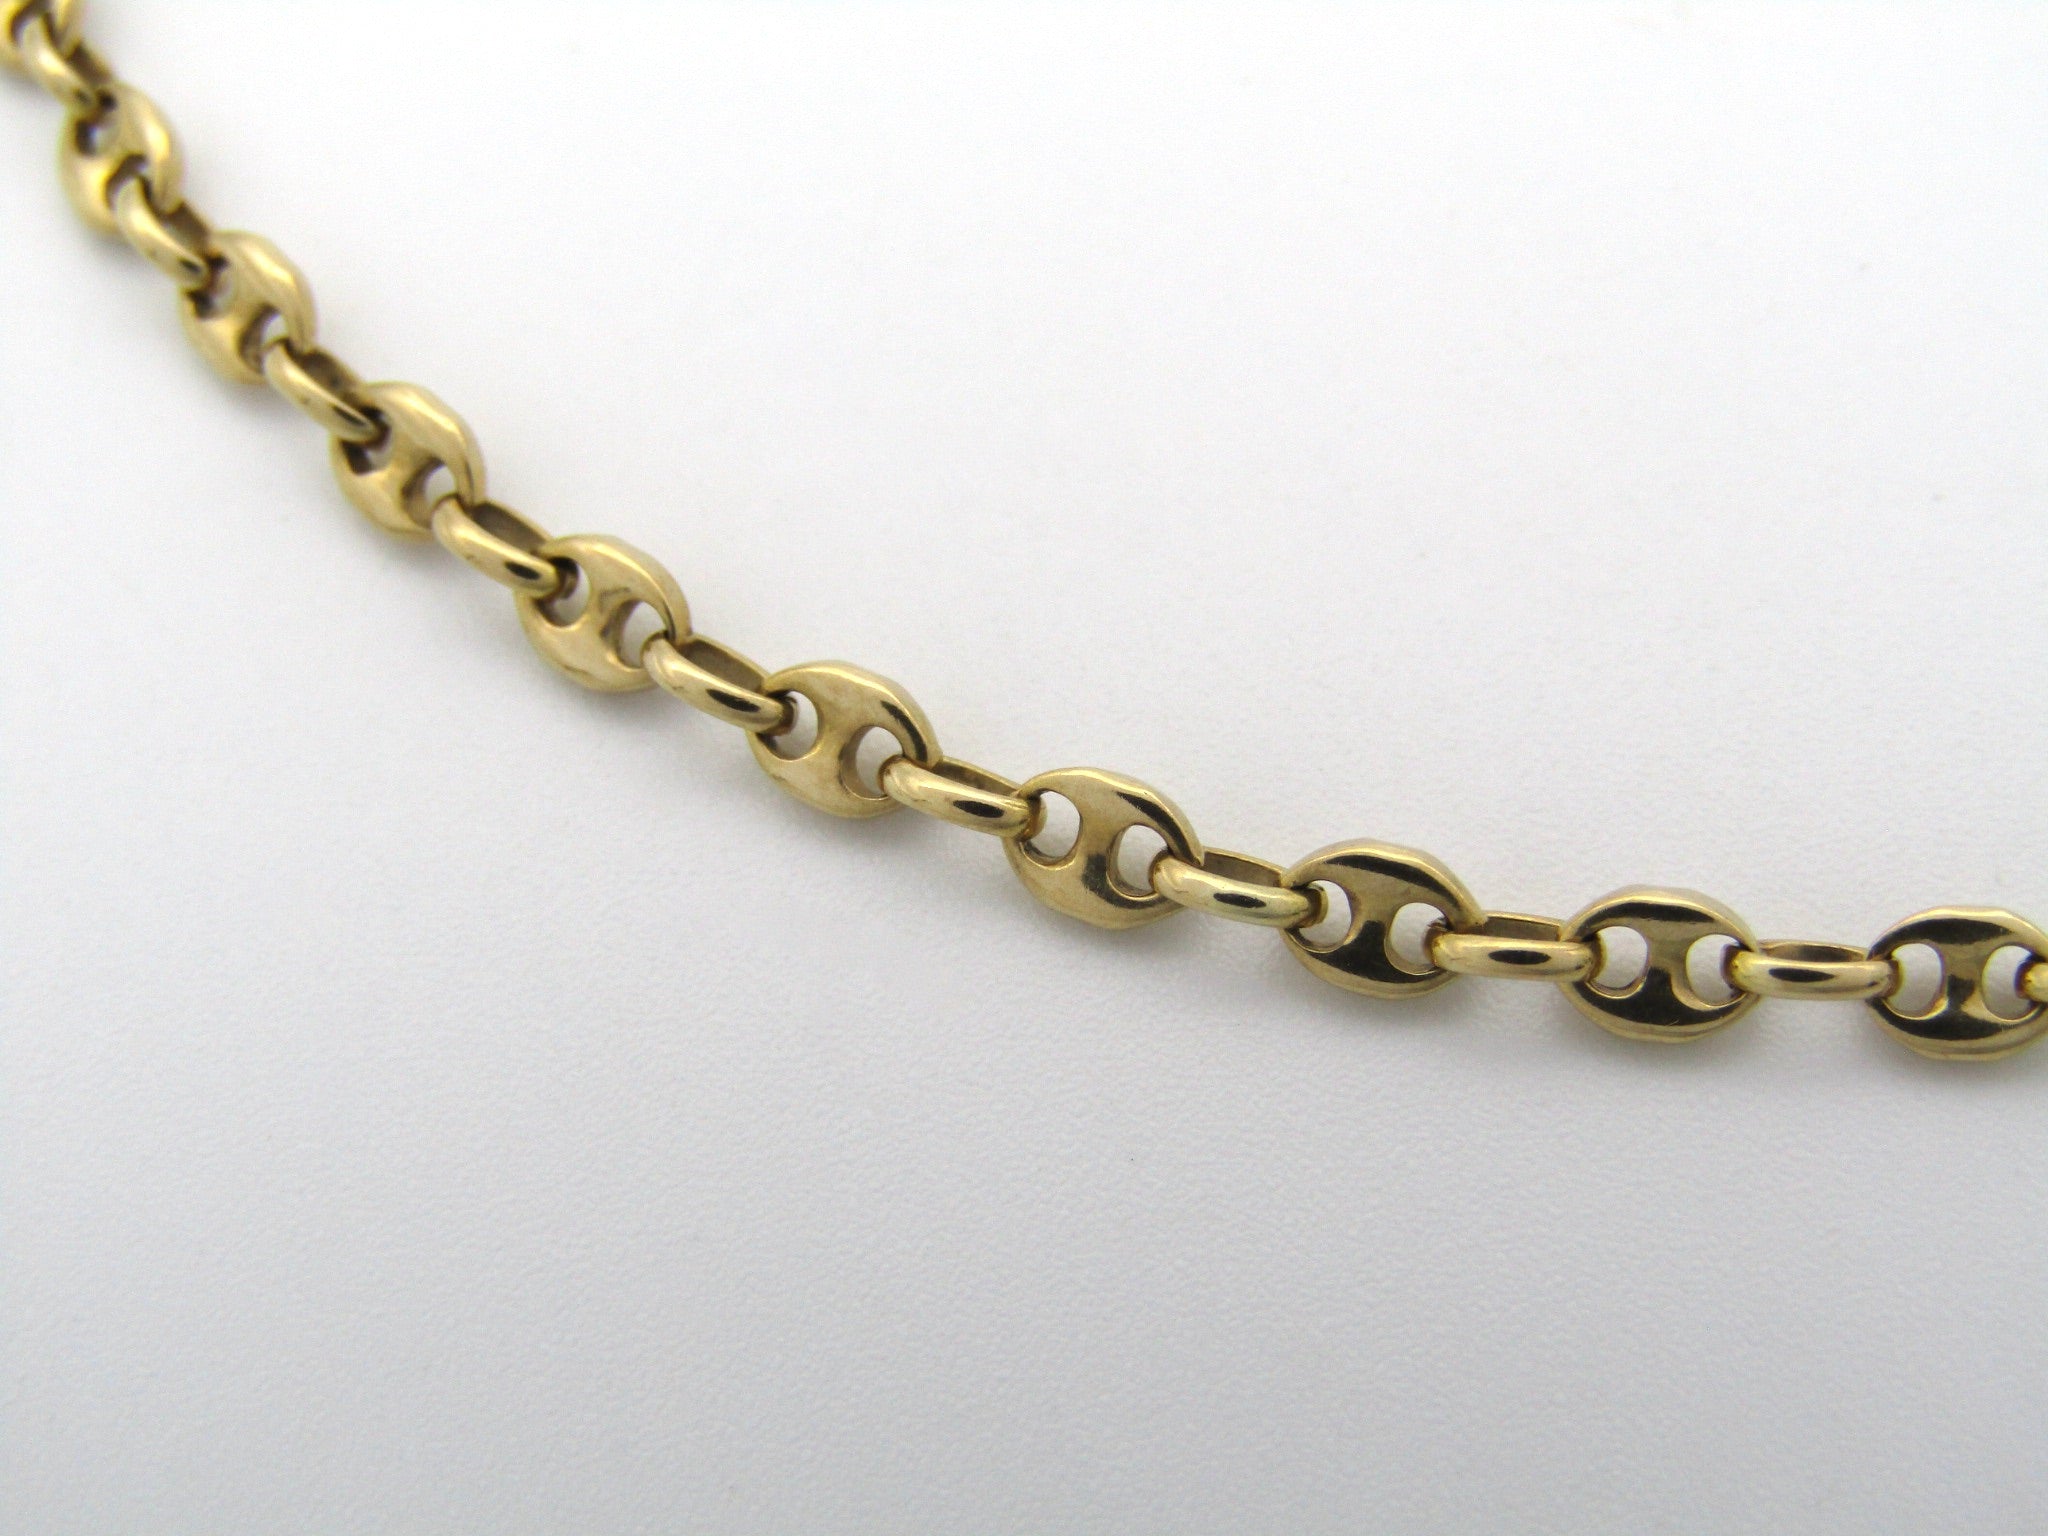 9K gold mariner link necklace.